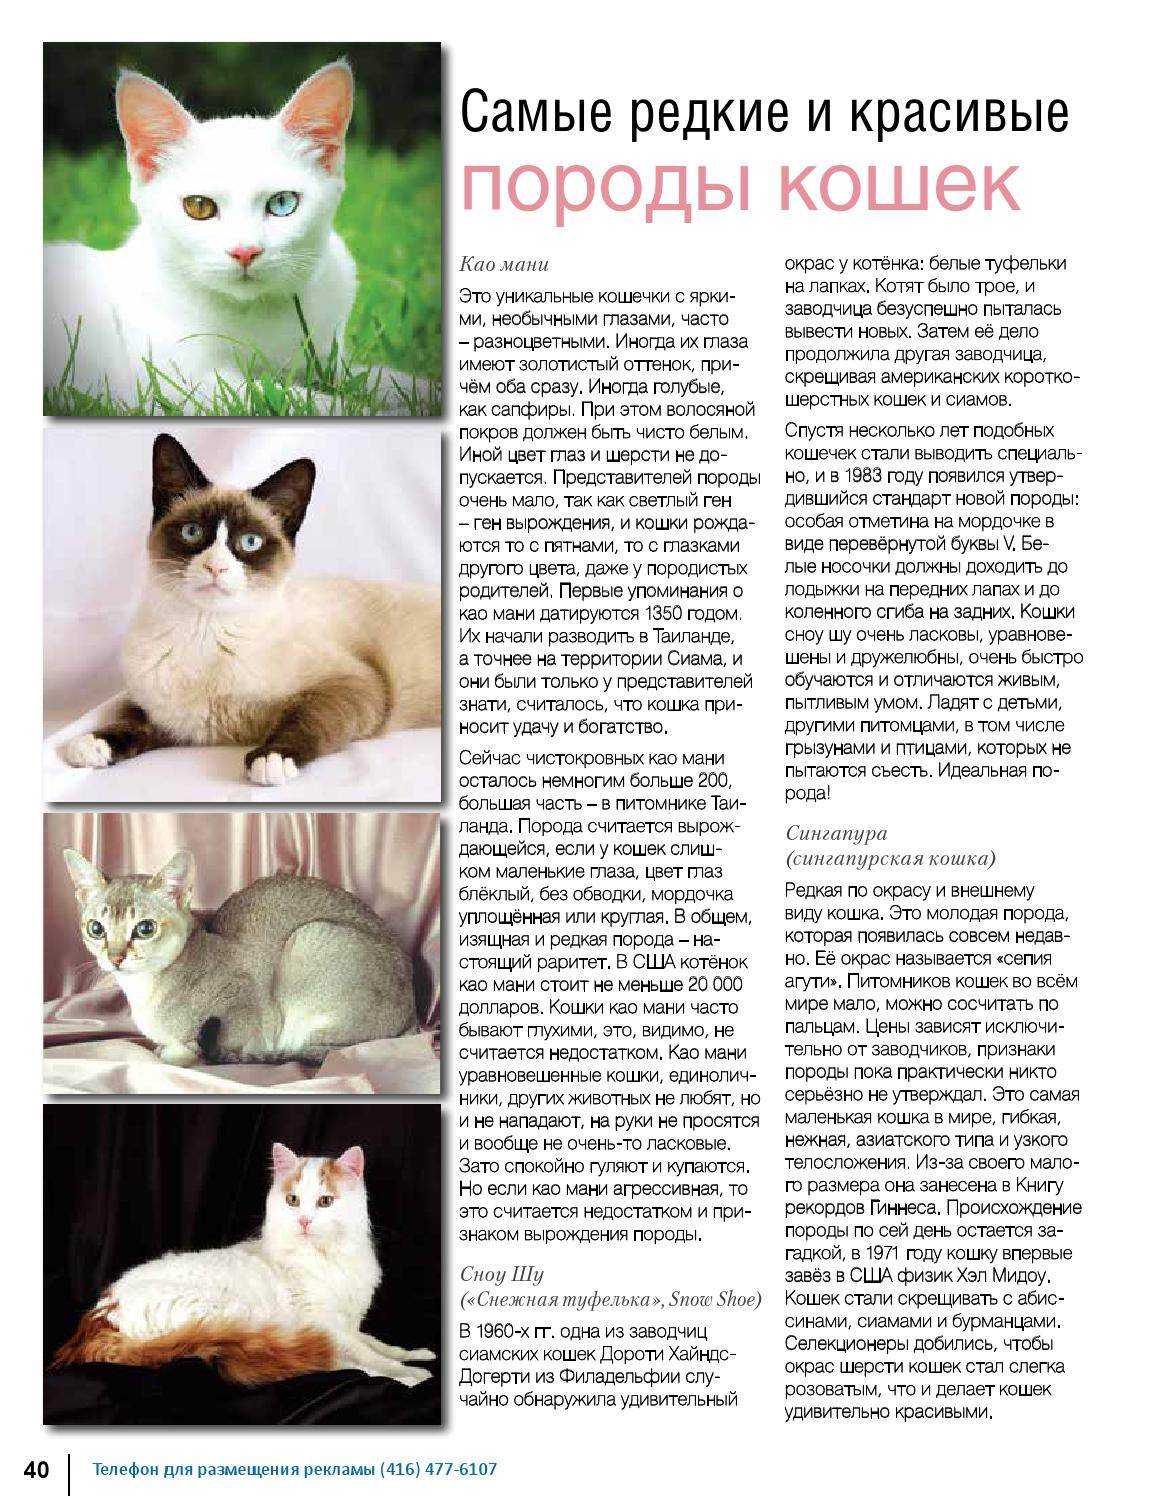 Кошка сноу шу: фото и описание породы